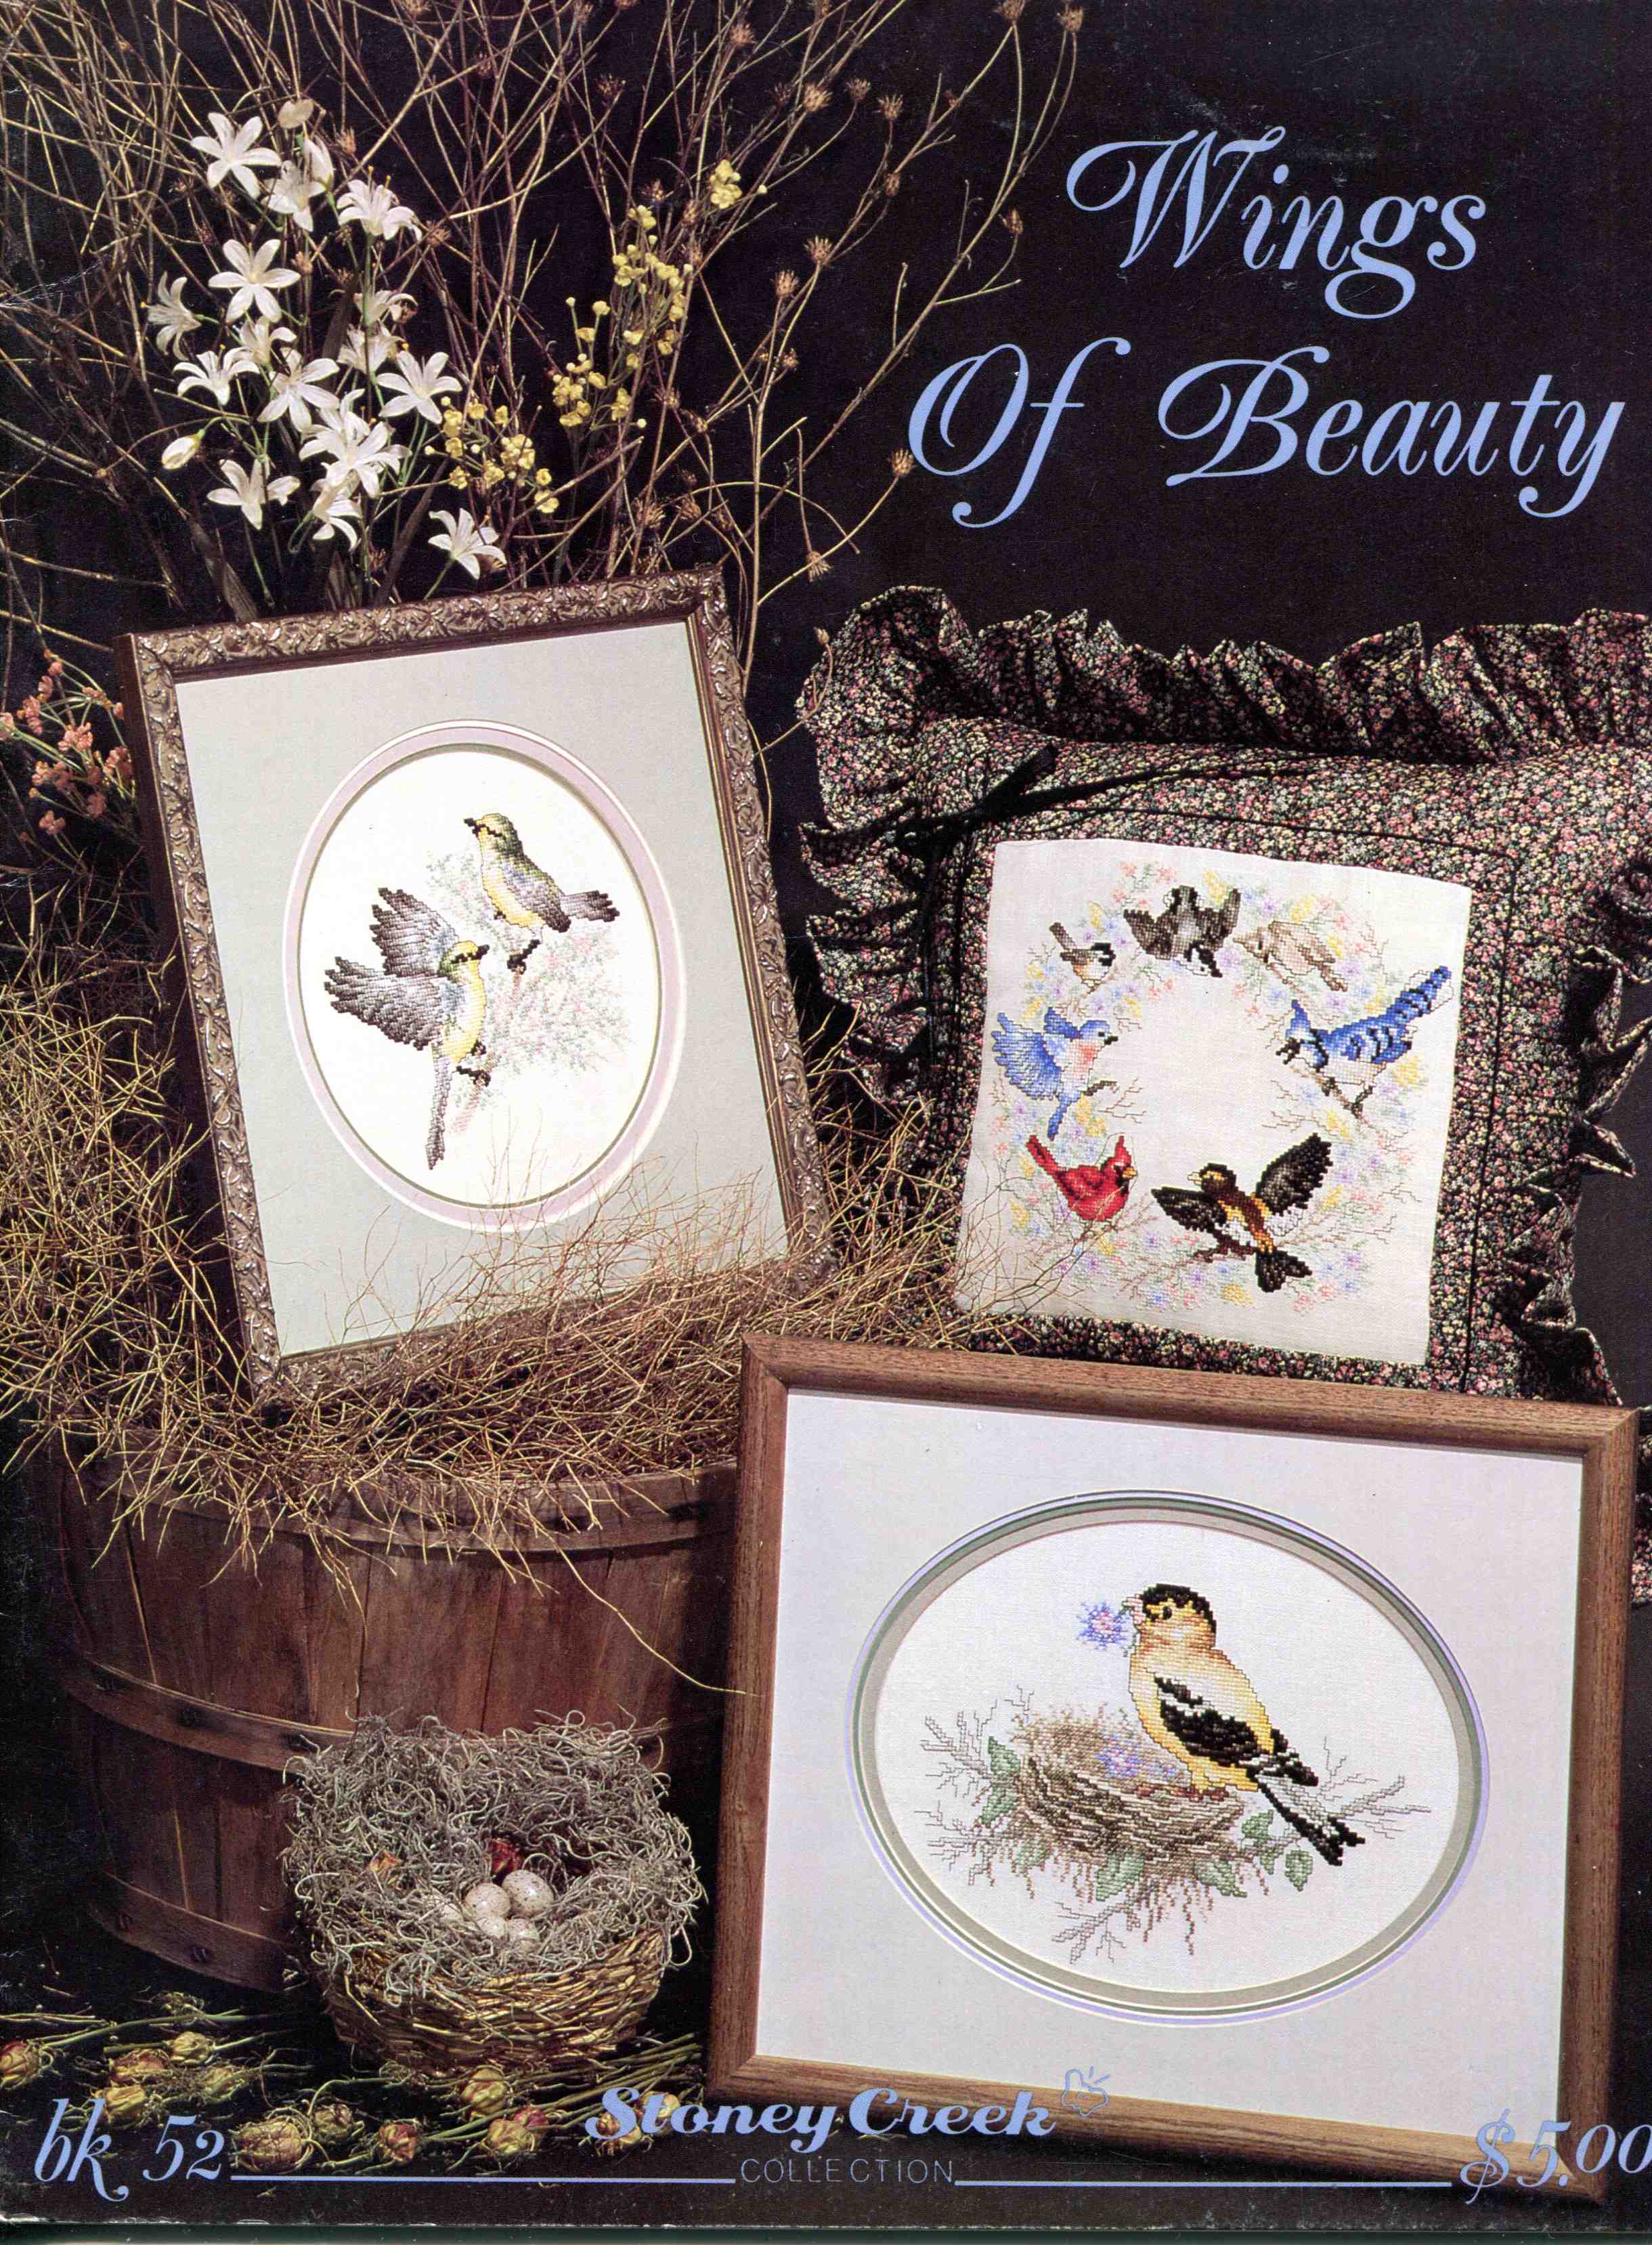 Wings of Beauty - Stoney Creek Nr. 52